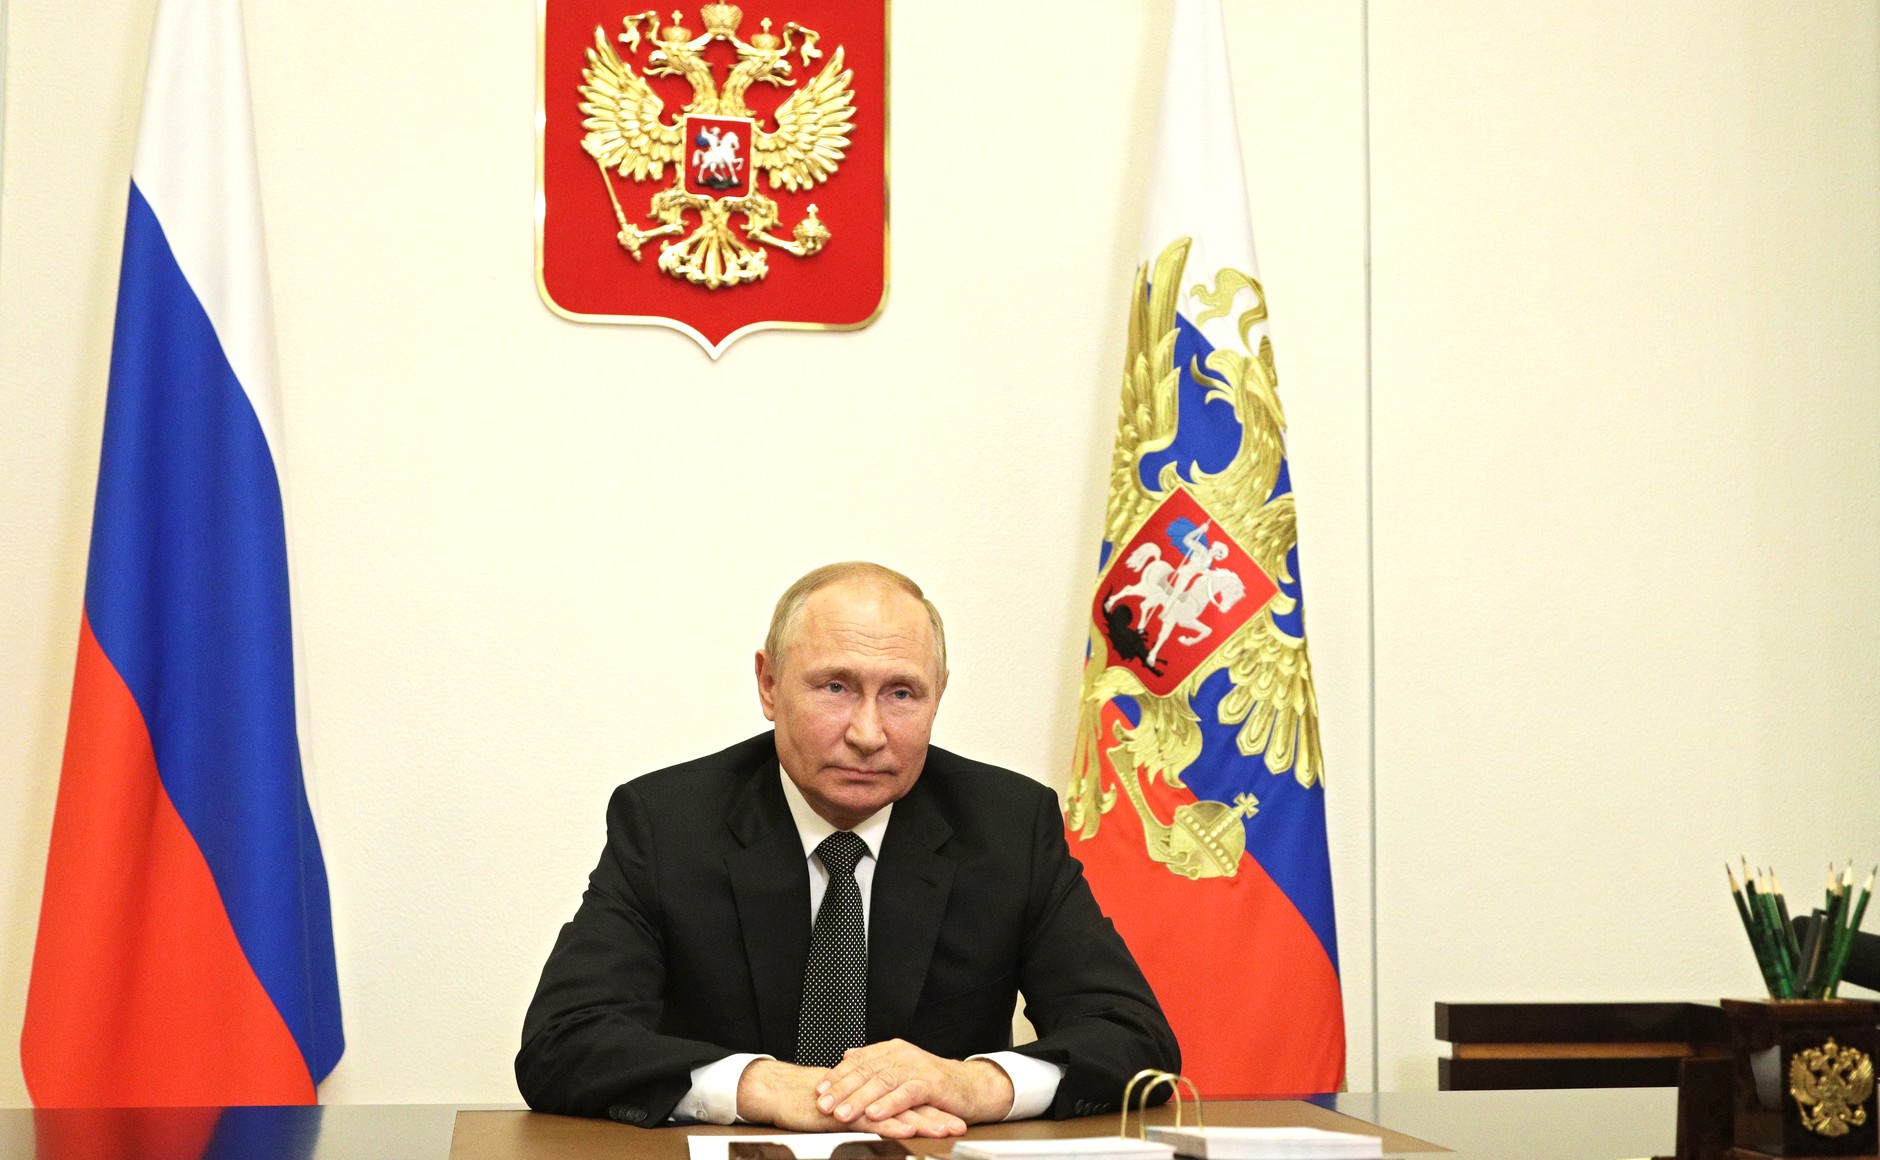 Обращение Владимира Путина к участникам и гостям X Московской конференции по международной безопасности.